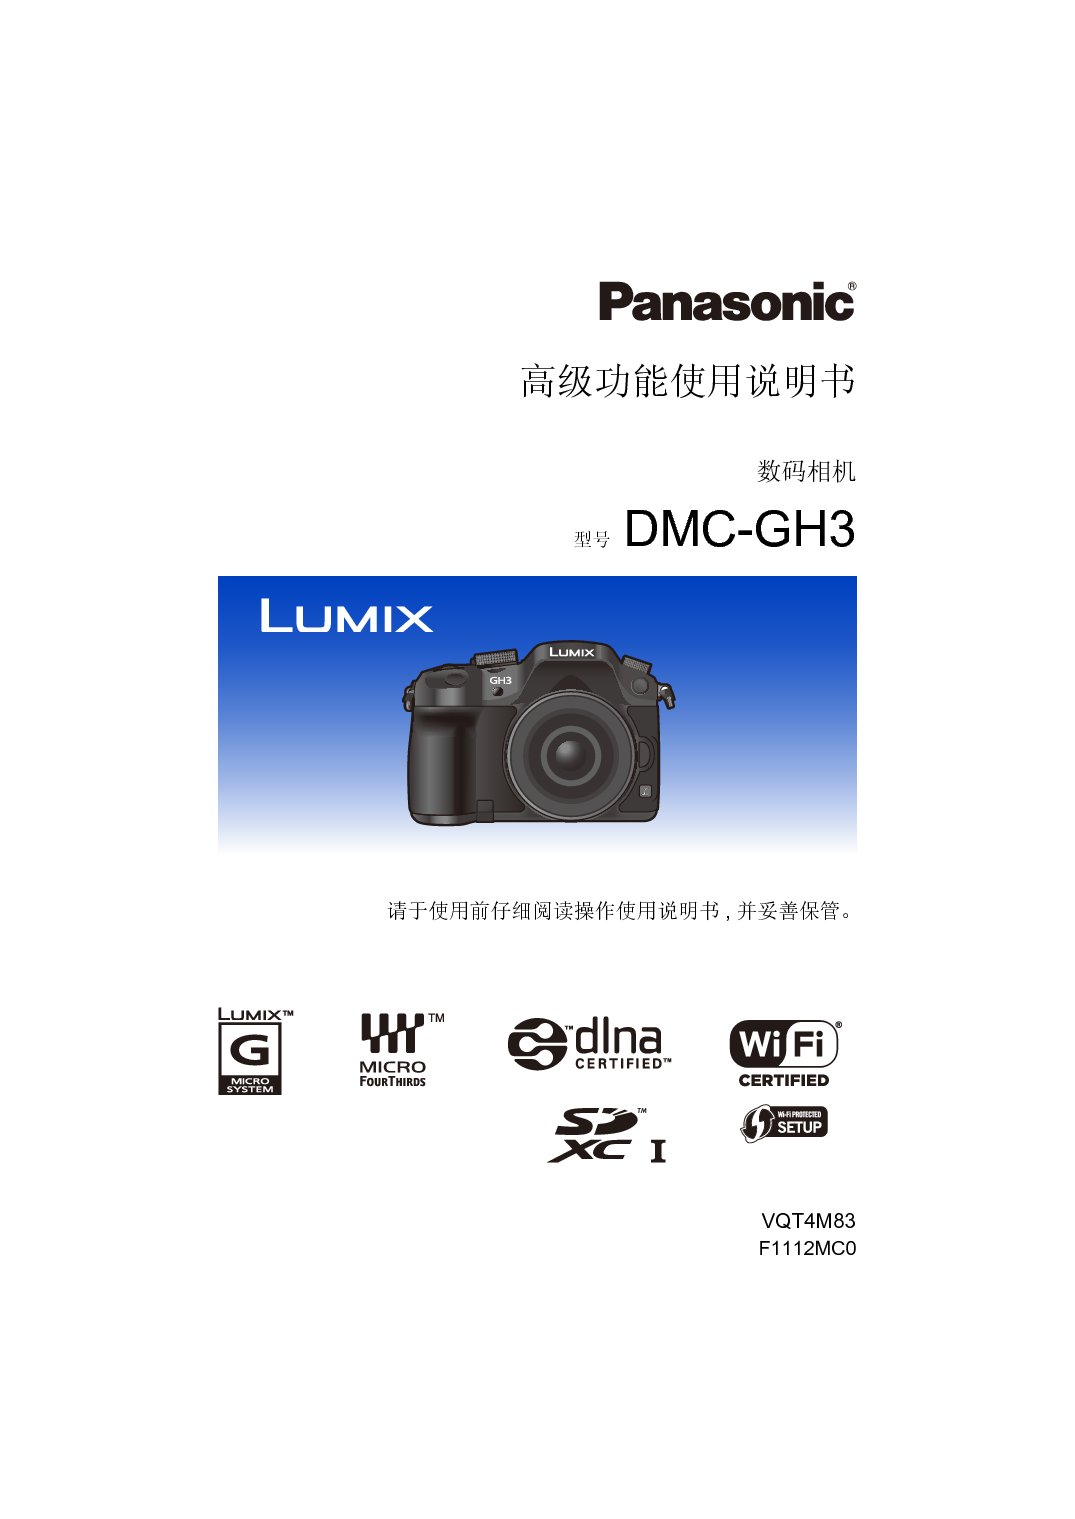 松下 Panasonic DMC-GH3GK 高级说明书 封面